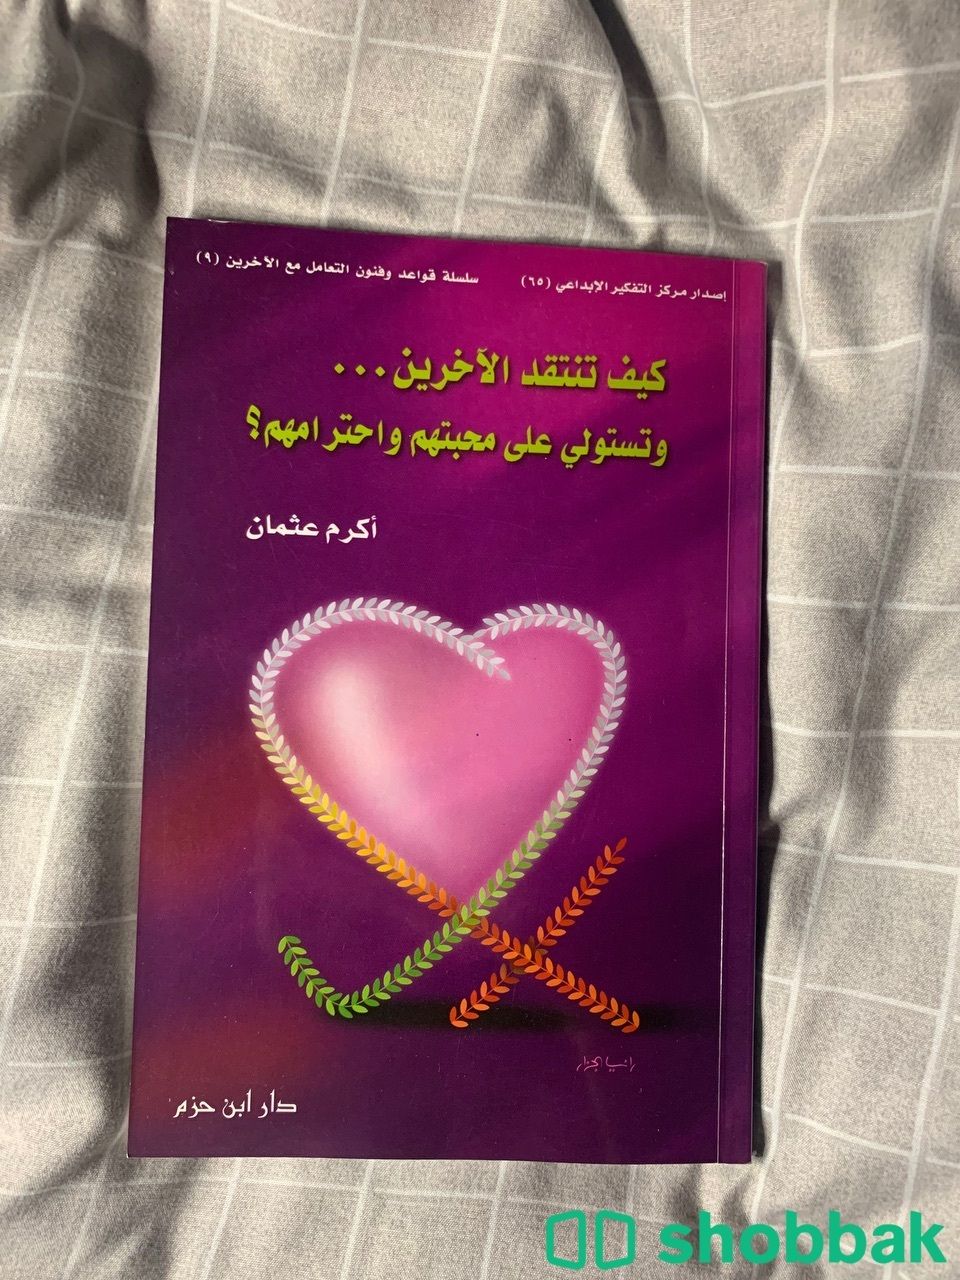 كتاب كيف تنتقد الاخرين وتستولي على محبتهم واحترامهم شباك السعودية